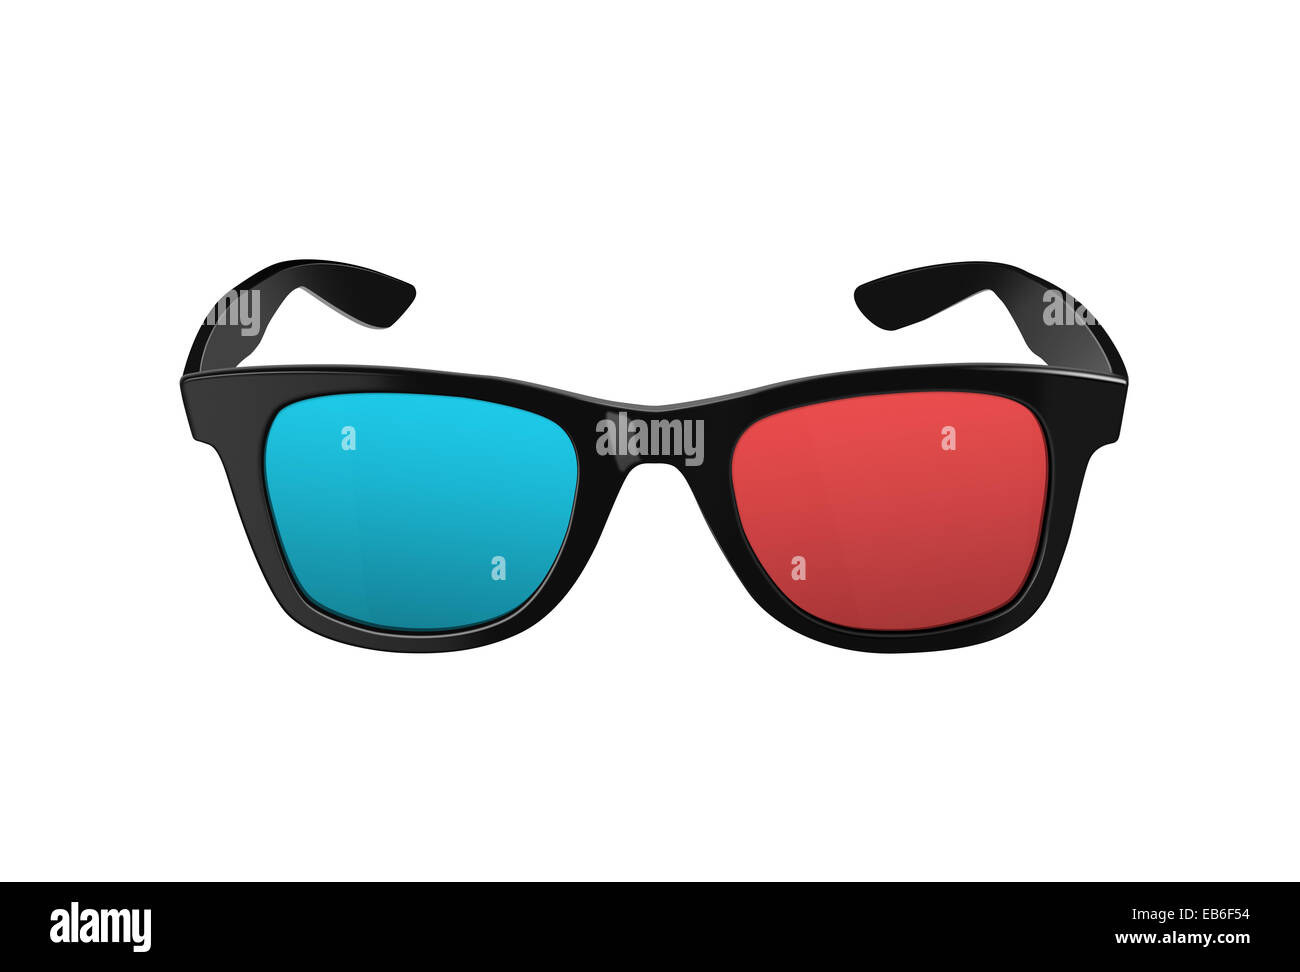 Negro, Gafas 3D para películas o películas en tres dimensiones, con llantas de plástico y lentes rojas y azules, tanto modernos y retro Foto de stock